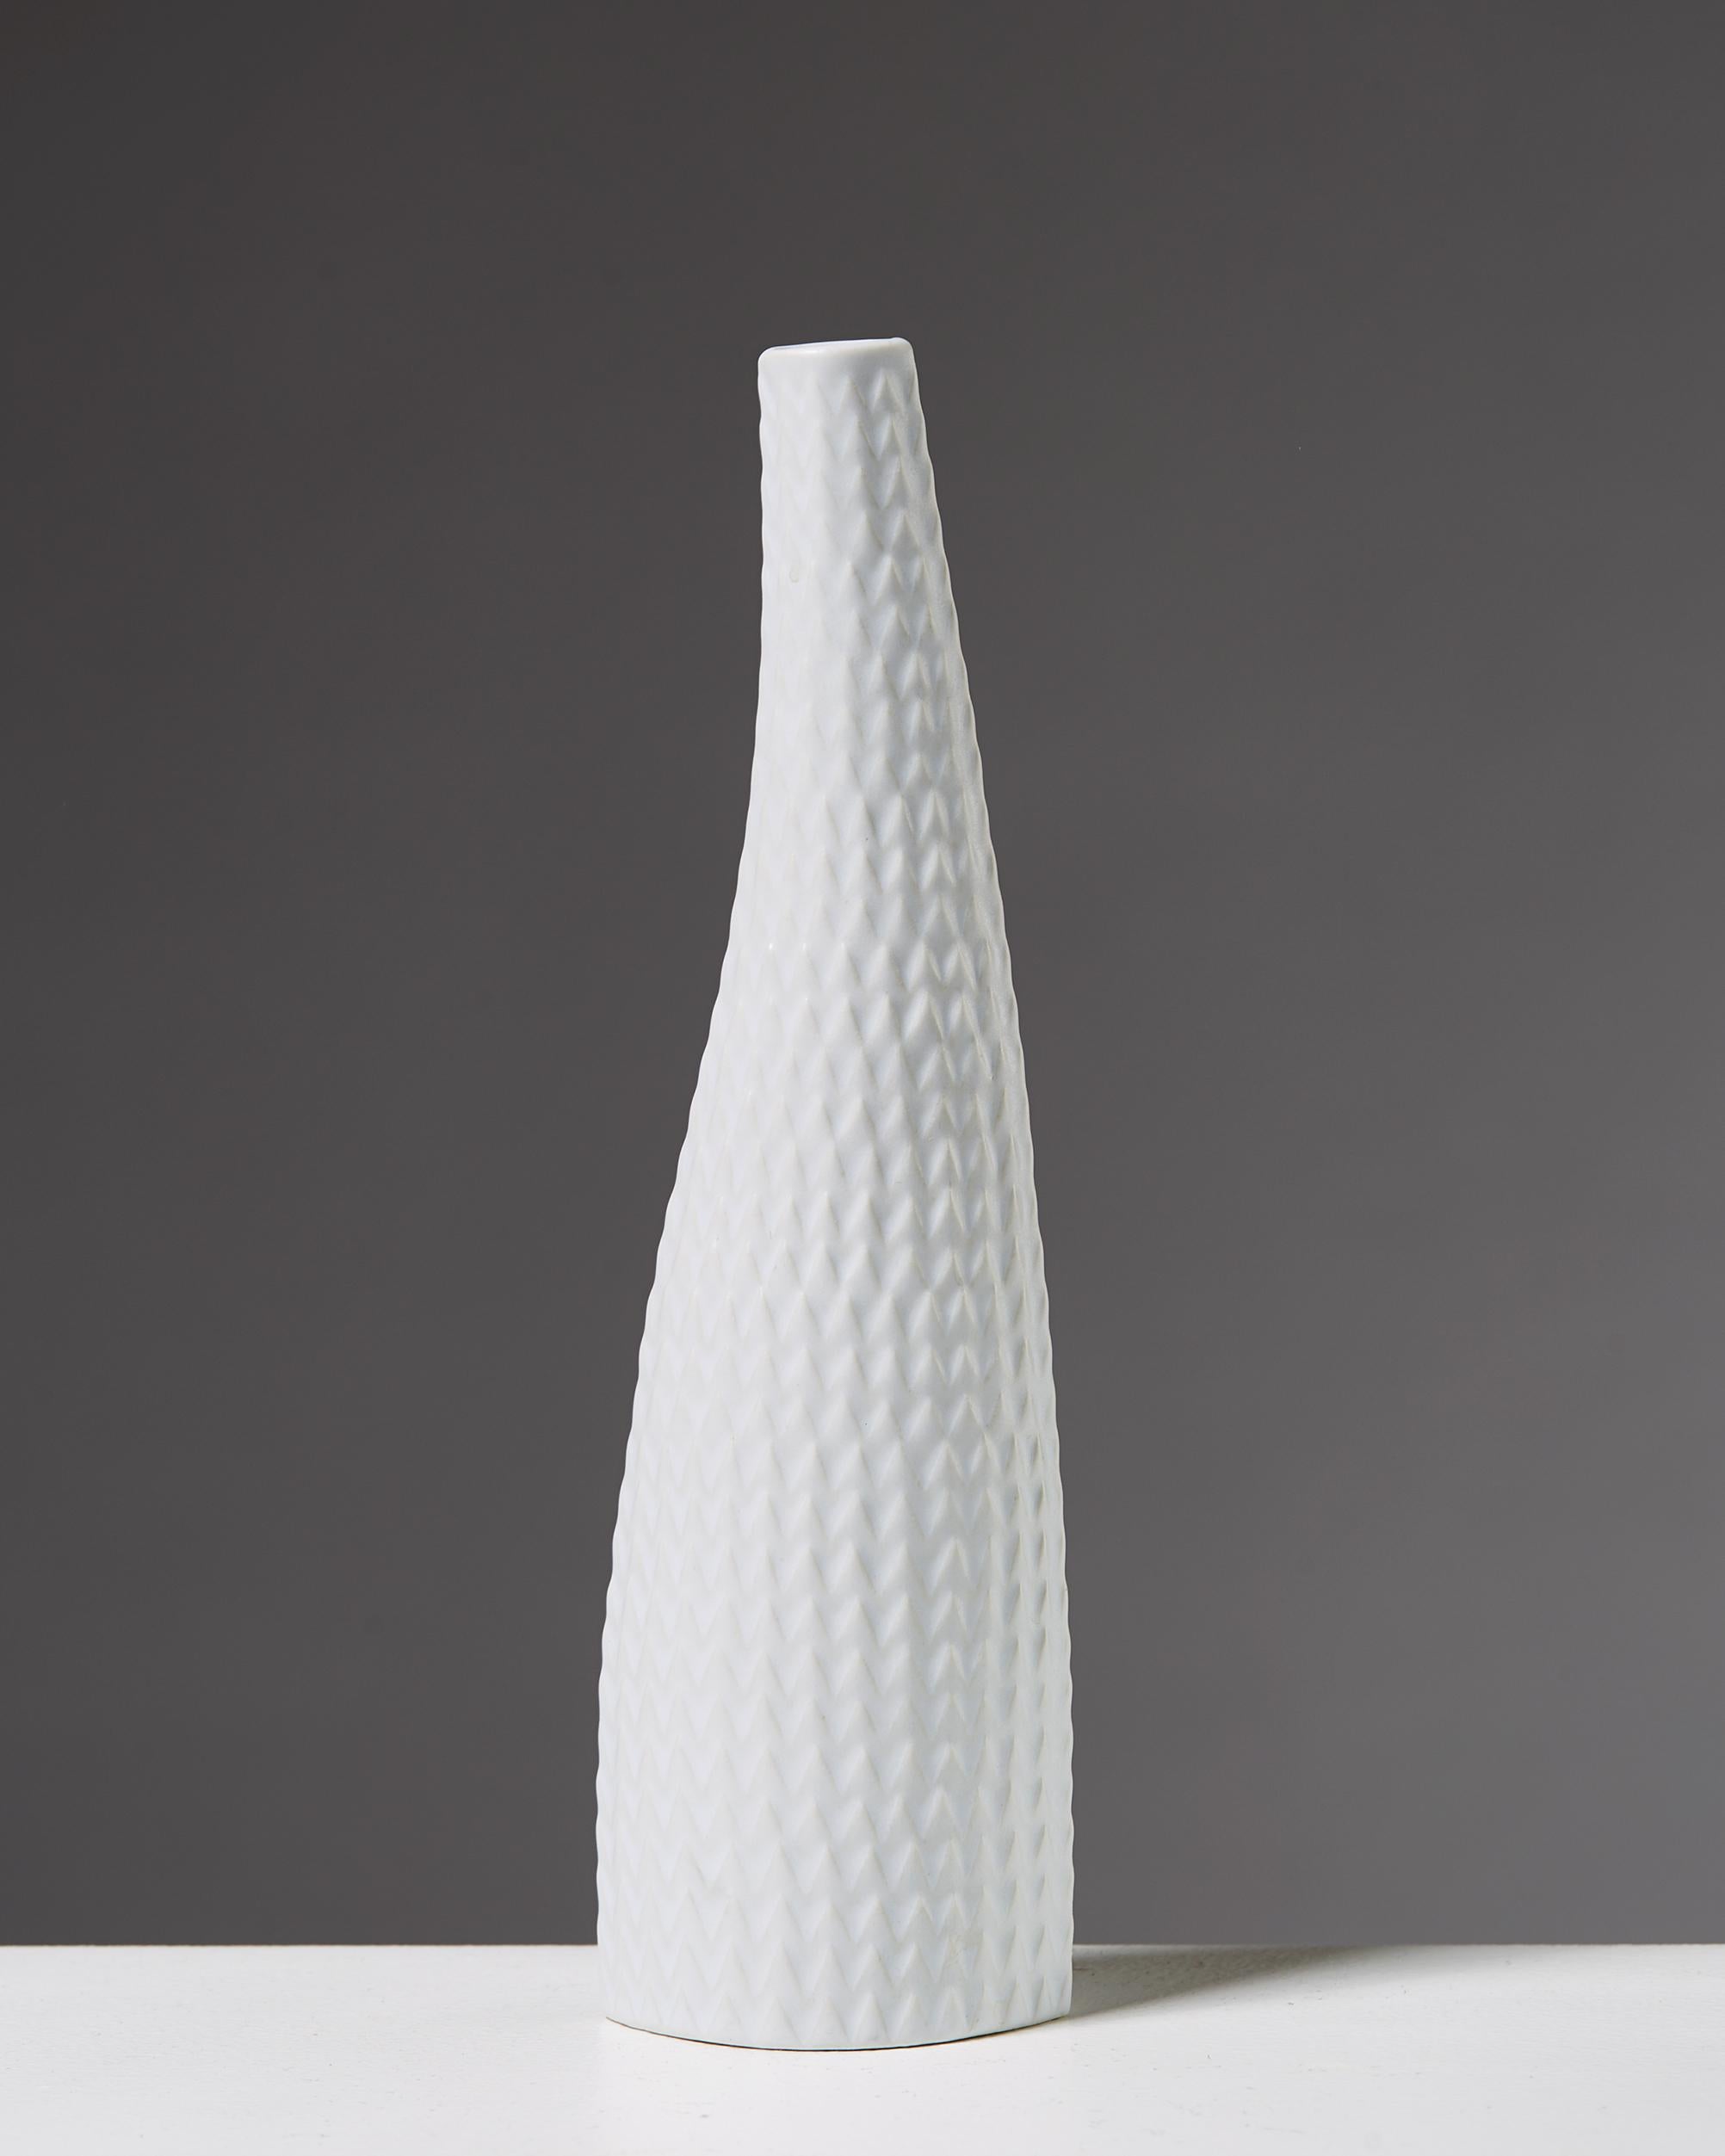 Ceramic. 

Measurements:
H: 22 cm/ 8 2/3